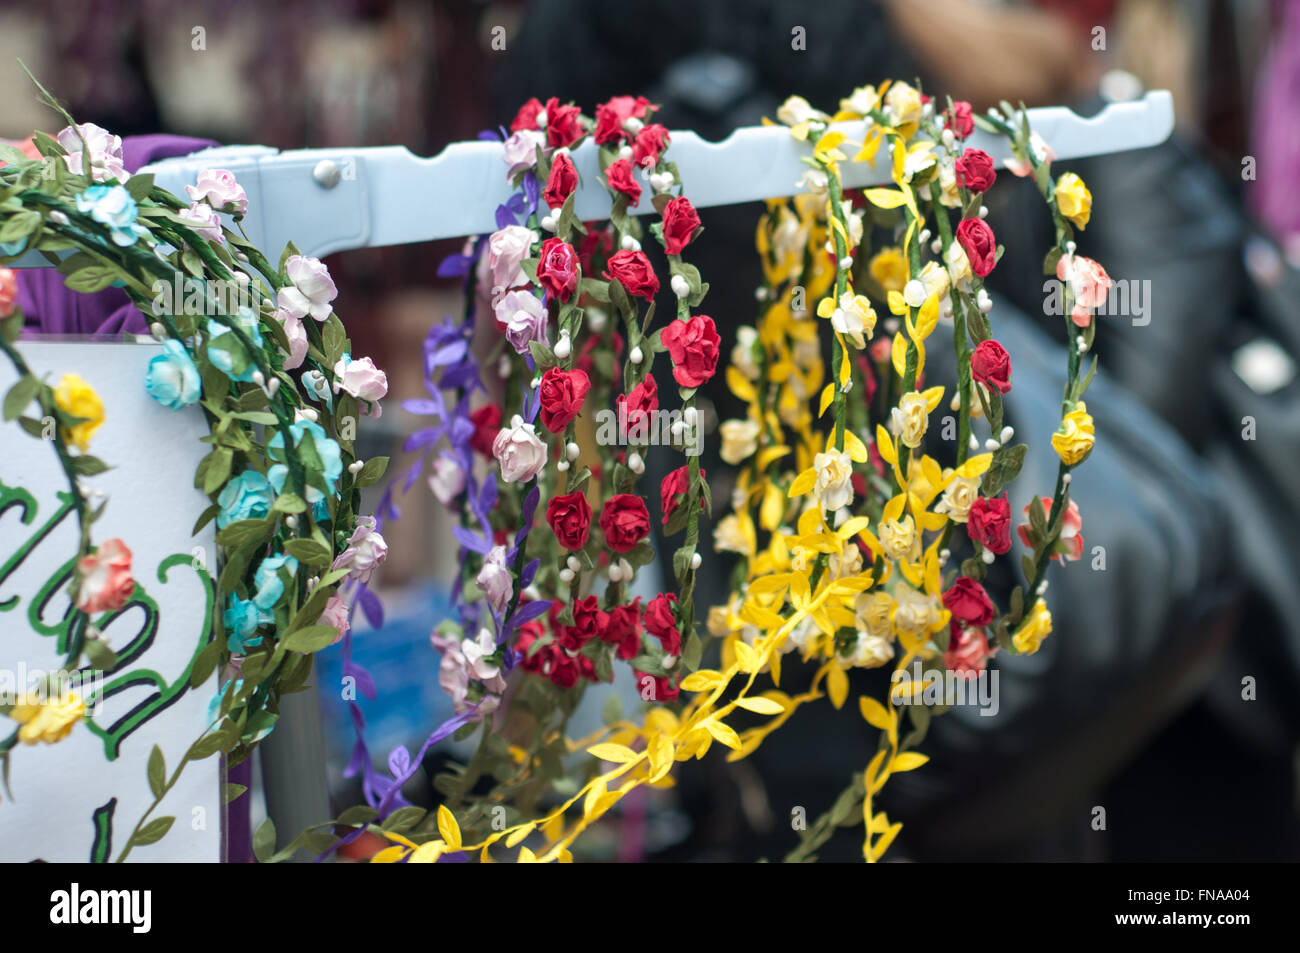 Fatti a mano con motivi floreali colorati lacci in un mercato in stallo in bagno, UK. Foto Stock